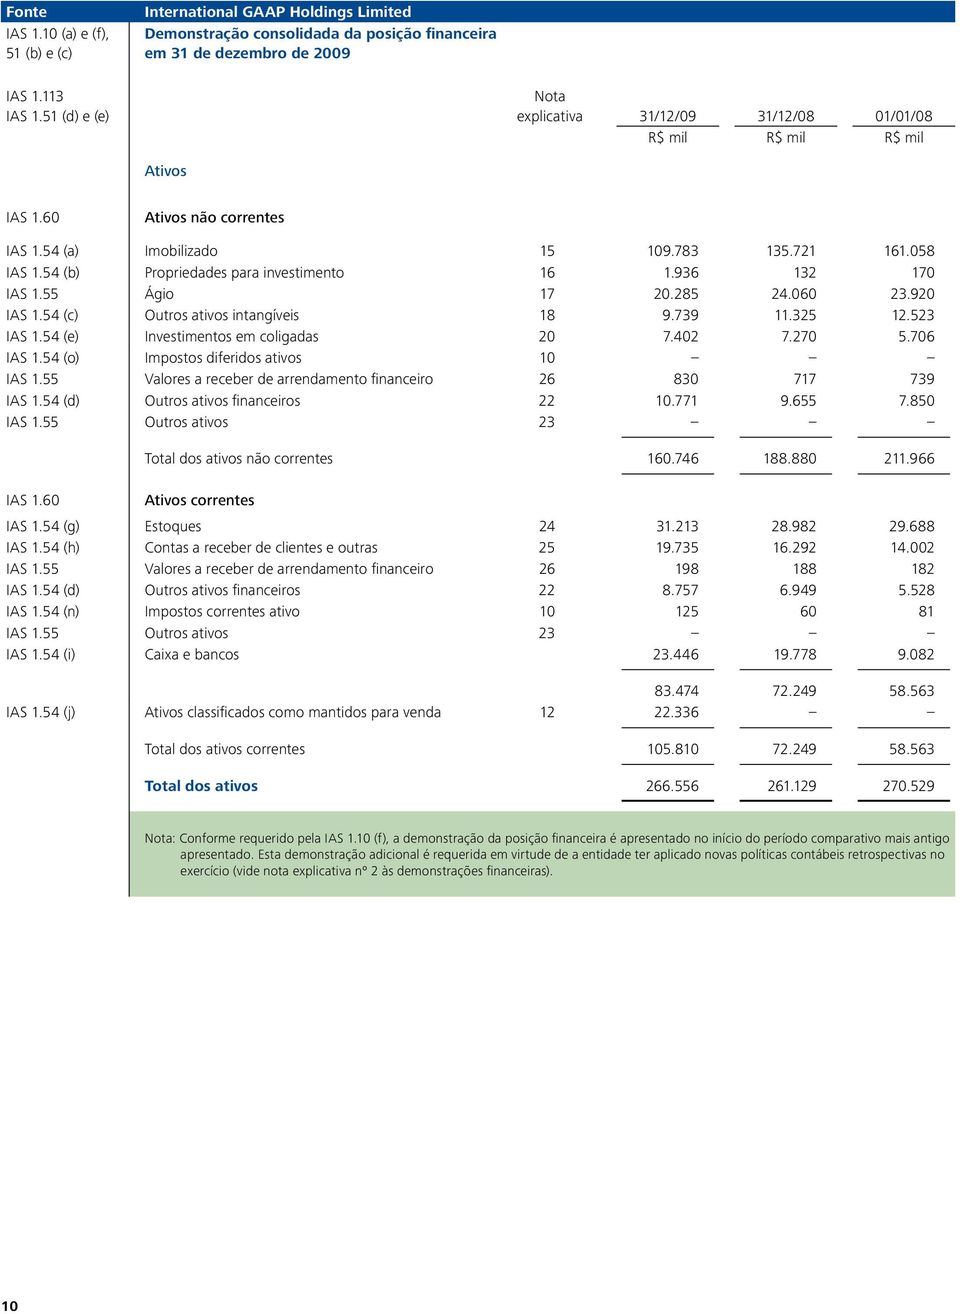 54 (c) Outros ativos intangíveis 18 9.739 11.325 12.523 IAS 1.54 (e) Investimentos em coligadas 20 7.402 7.270 5.706 IAS 1.54 (o) Impostos diferidos ativos 10 IAS 1.